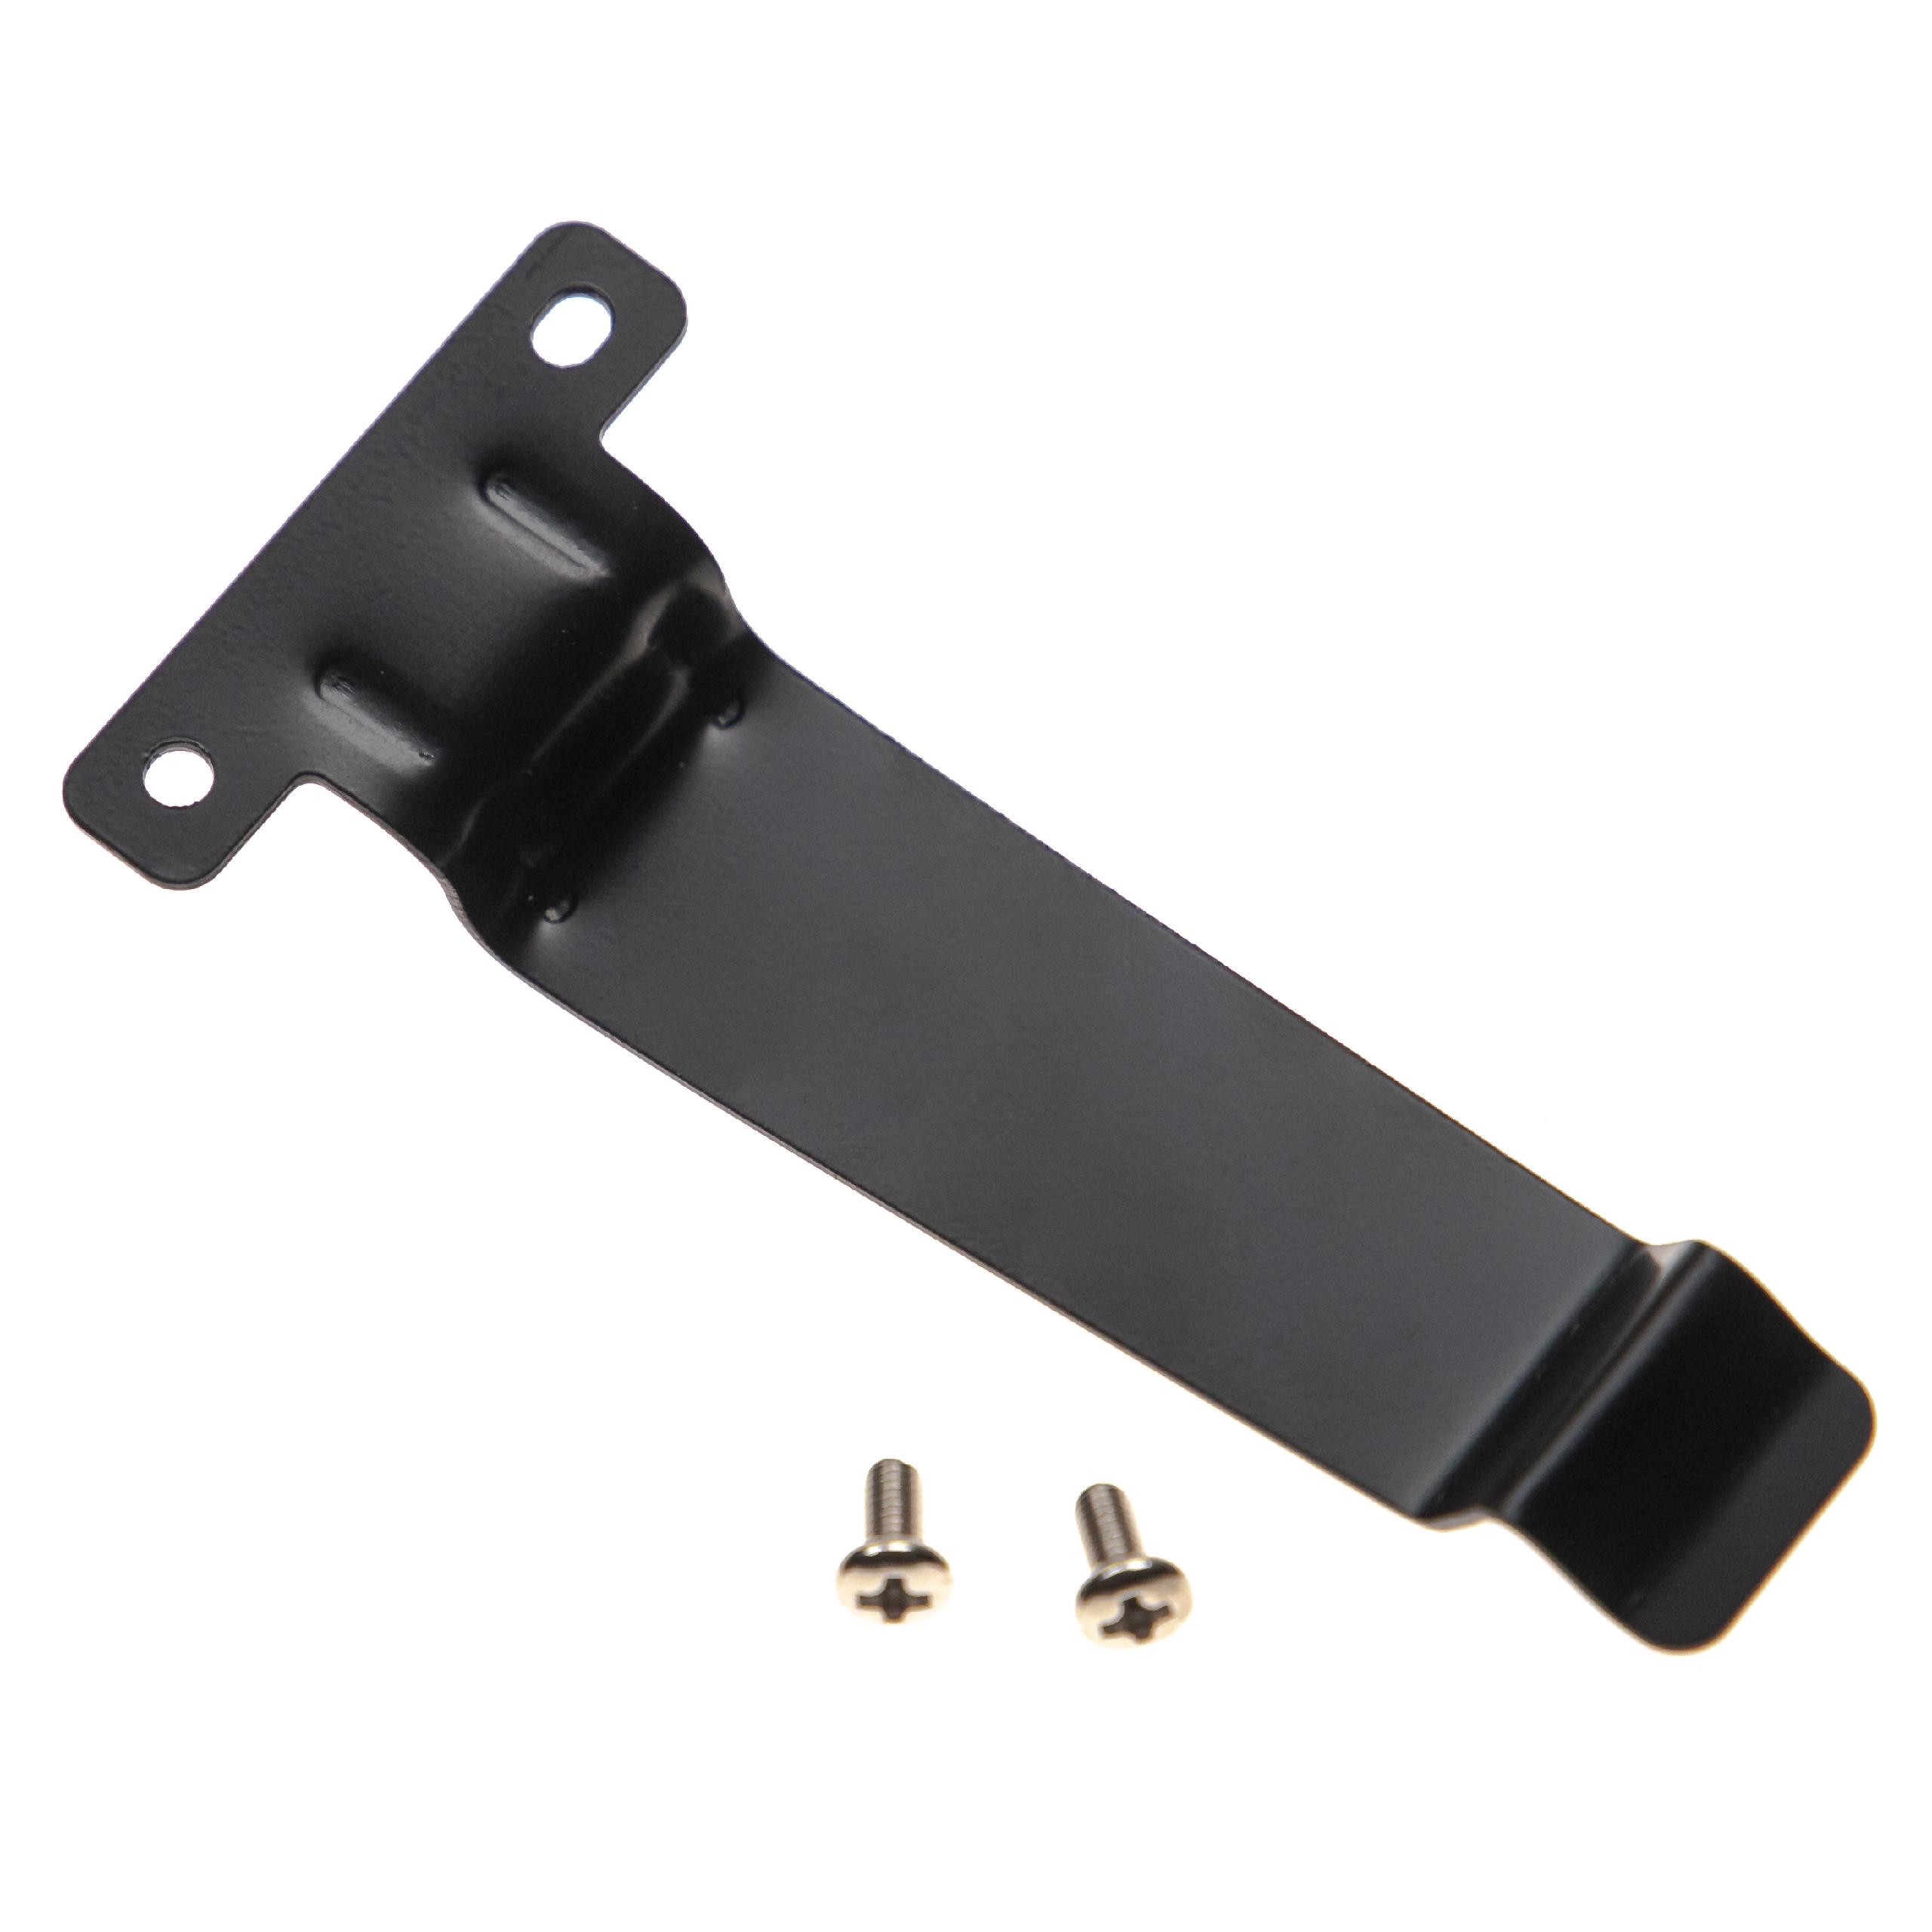 Clip ceinture pour radio Kenwood TK-2180 – vis de serrage, métal, noir